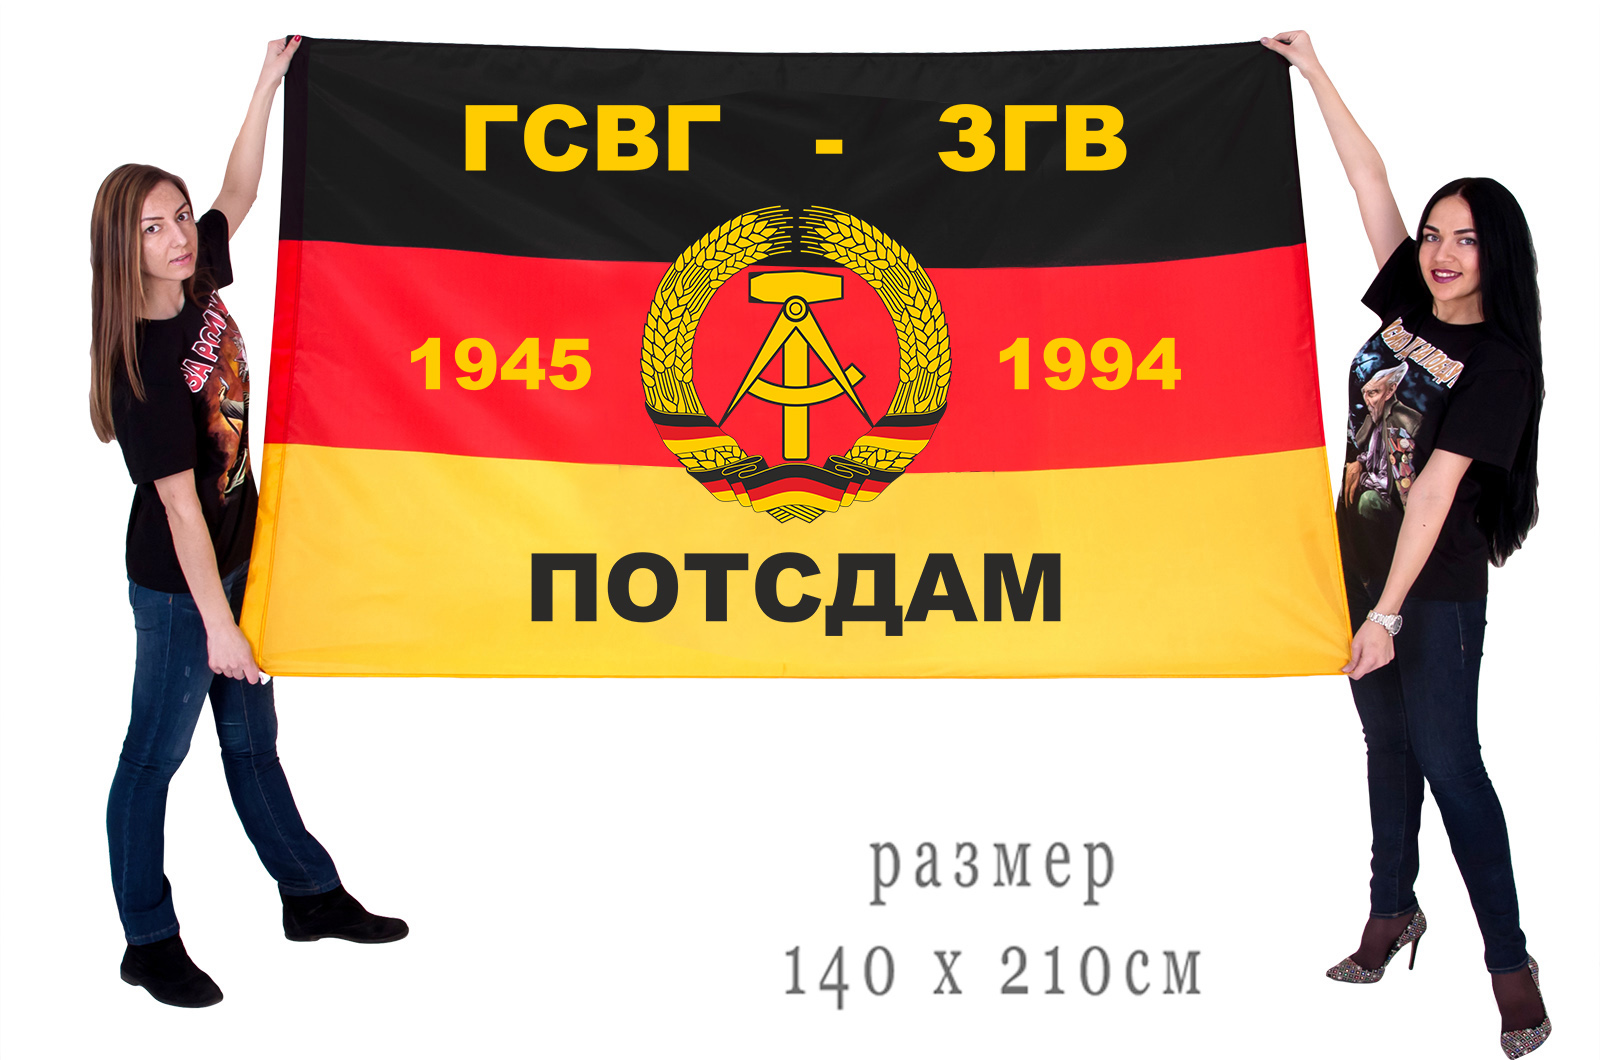 Большой флаг ГСВГ- ЗГВ "Потсдам" 1945-1994